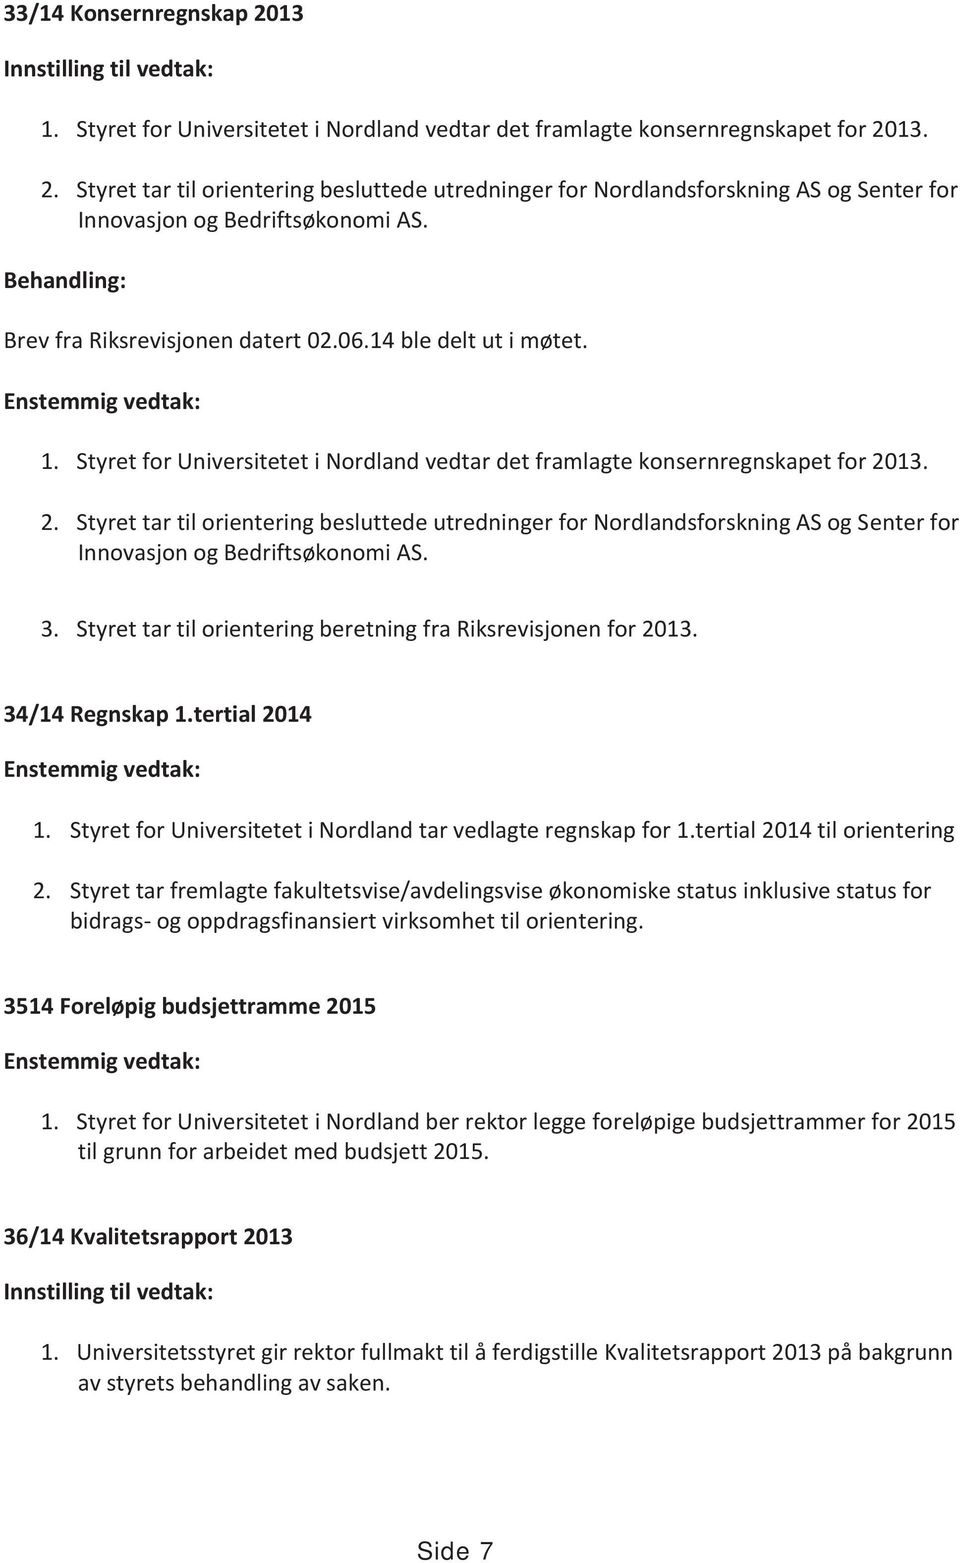 13. 2. Styret tar til orientering besluttede utredninger for Nordlandsforskning AS og Senter for Innovasjon og Bedriftsøkonomi AS. 3. Styret tar til orientering beretning fra Riksrevisjonen for 2013.